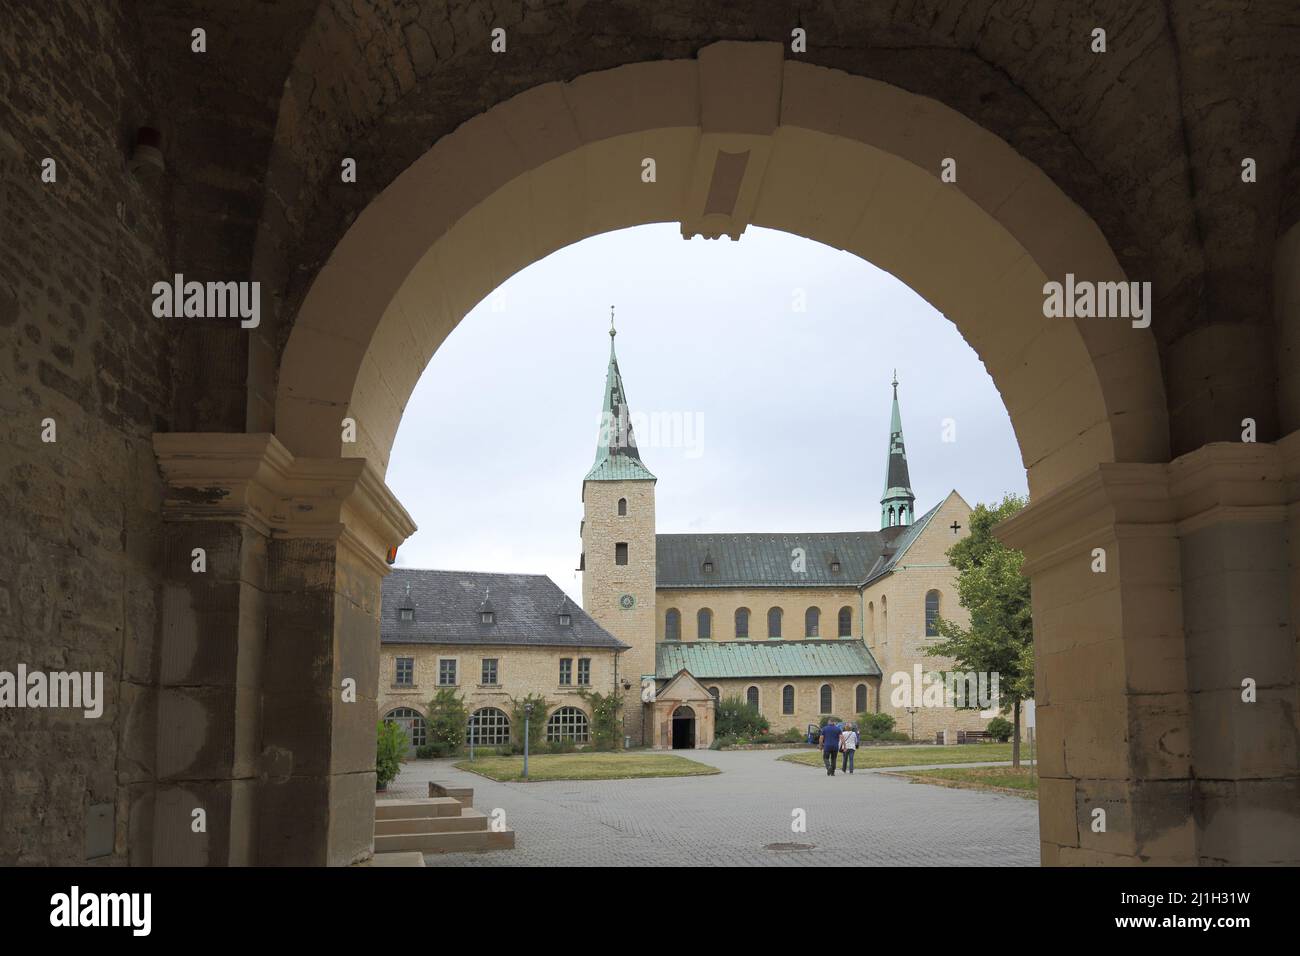 Complexe de monastère avec église de monastère à Huysburg, Saxe-Anhalt, Allemagne Banque D'Images